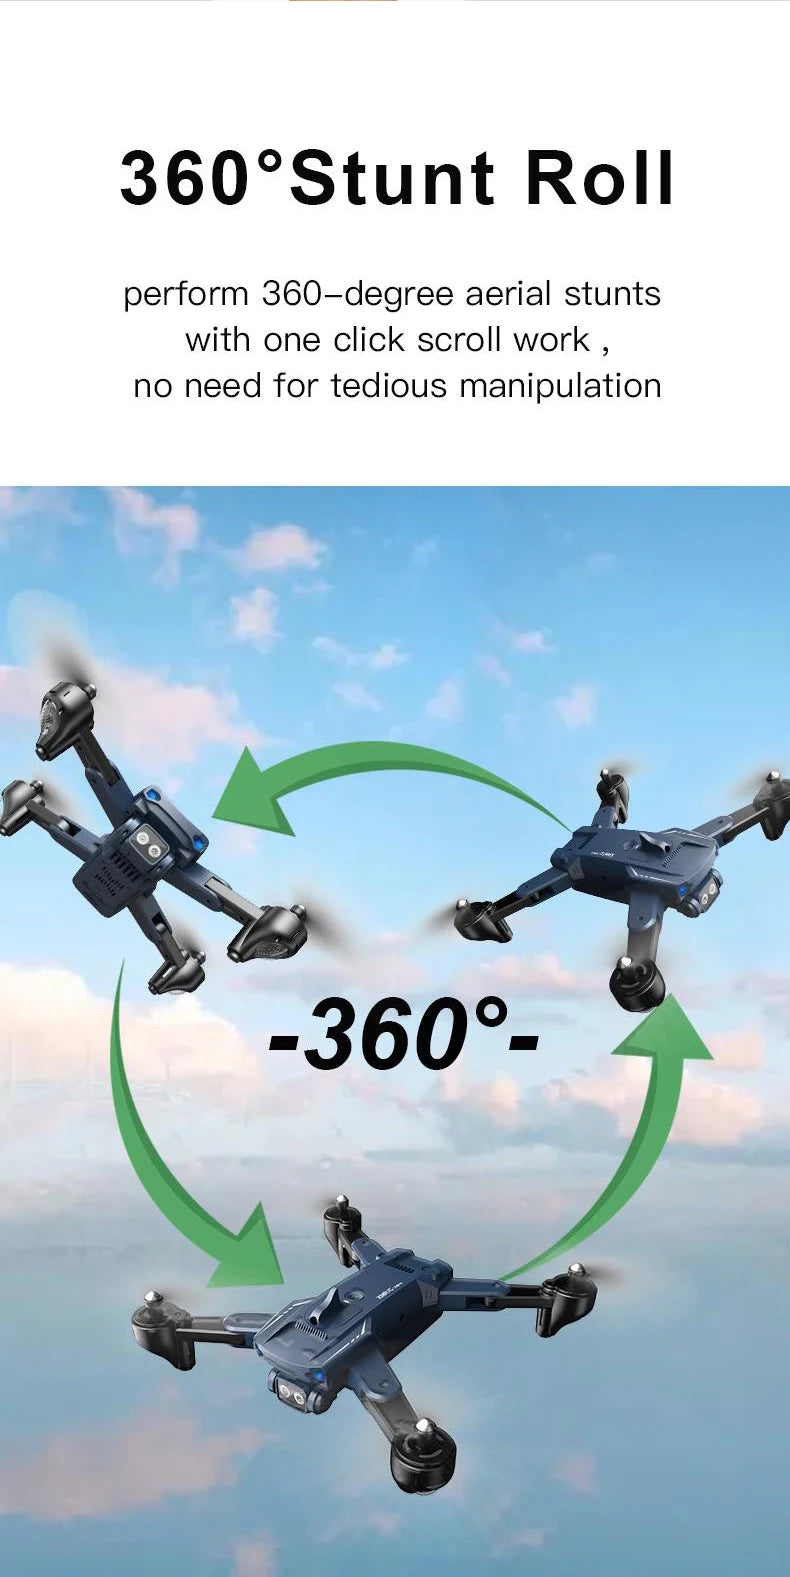 M6 Drone, 360'stunt roll perform 360-degree aerial stunts